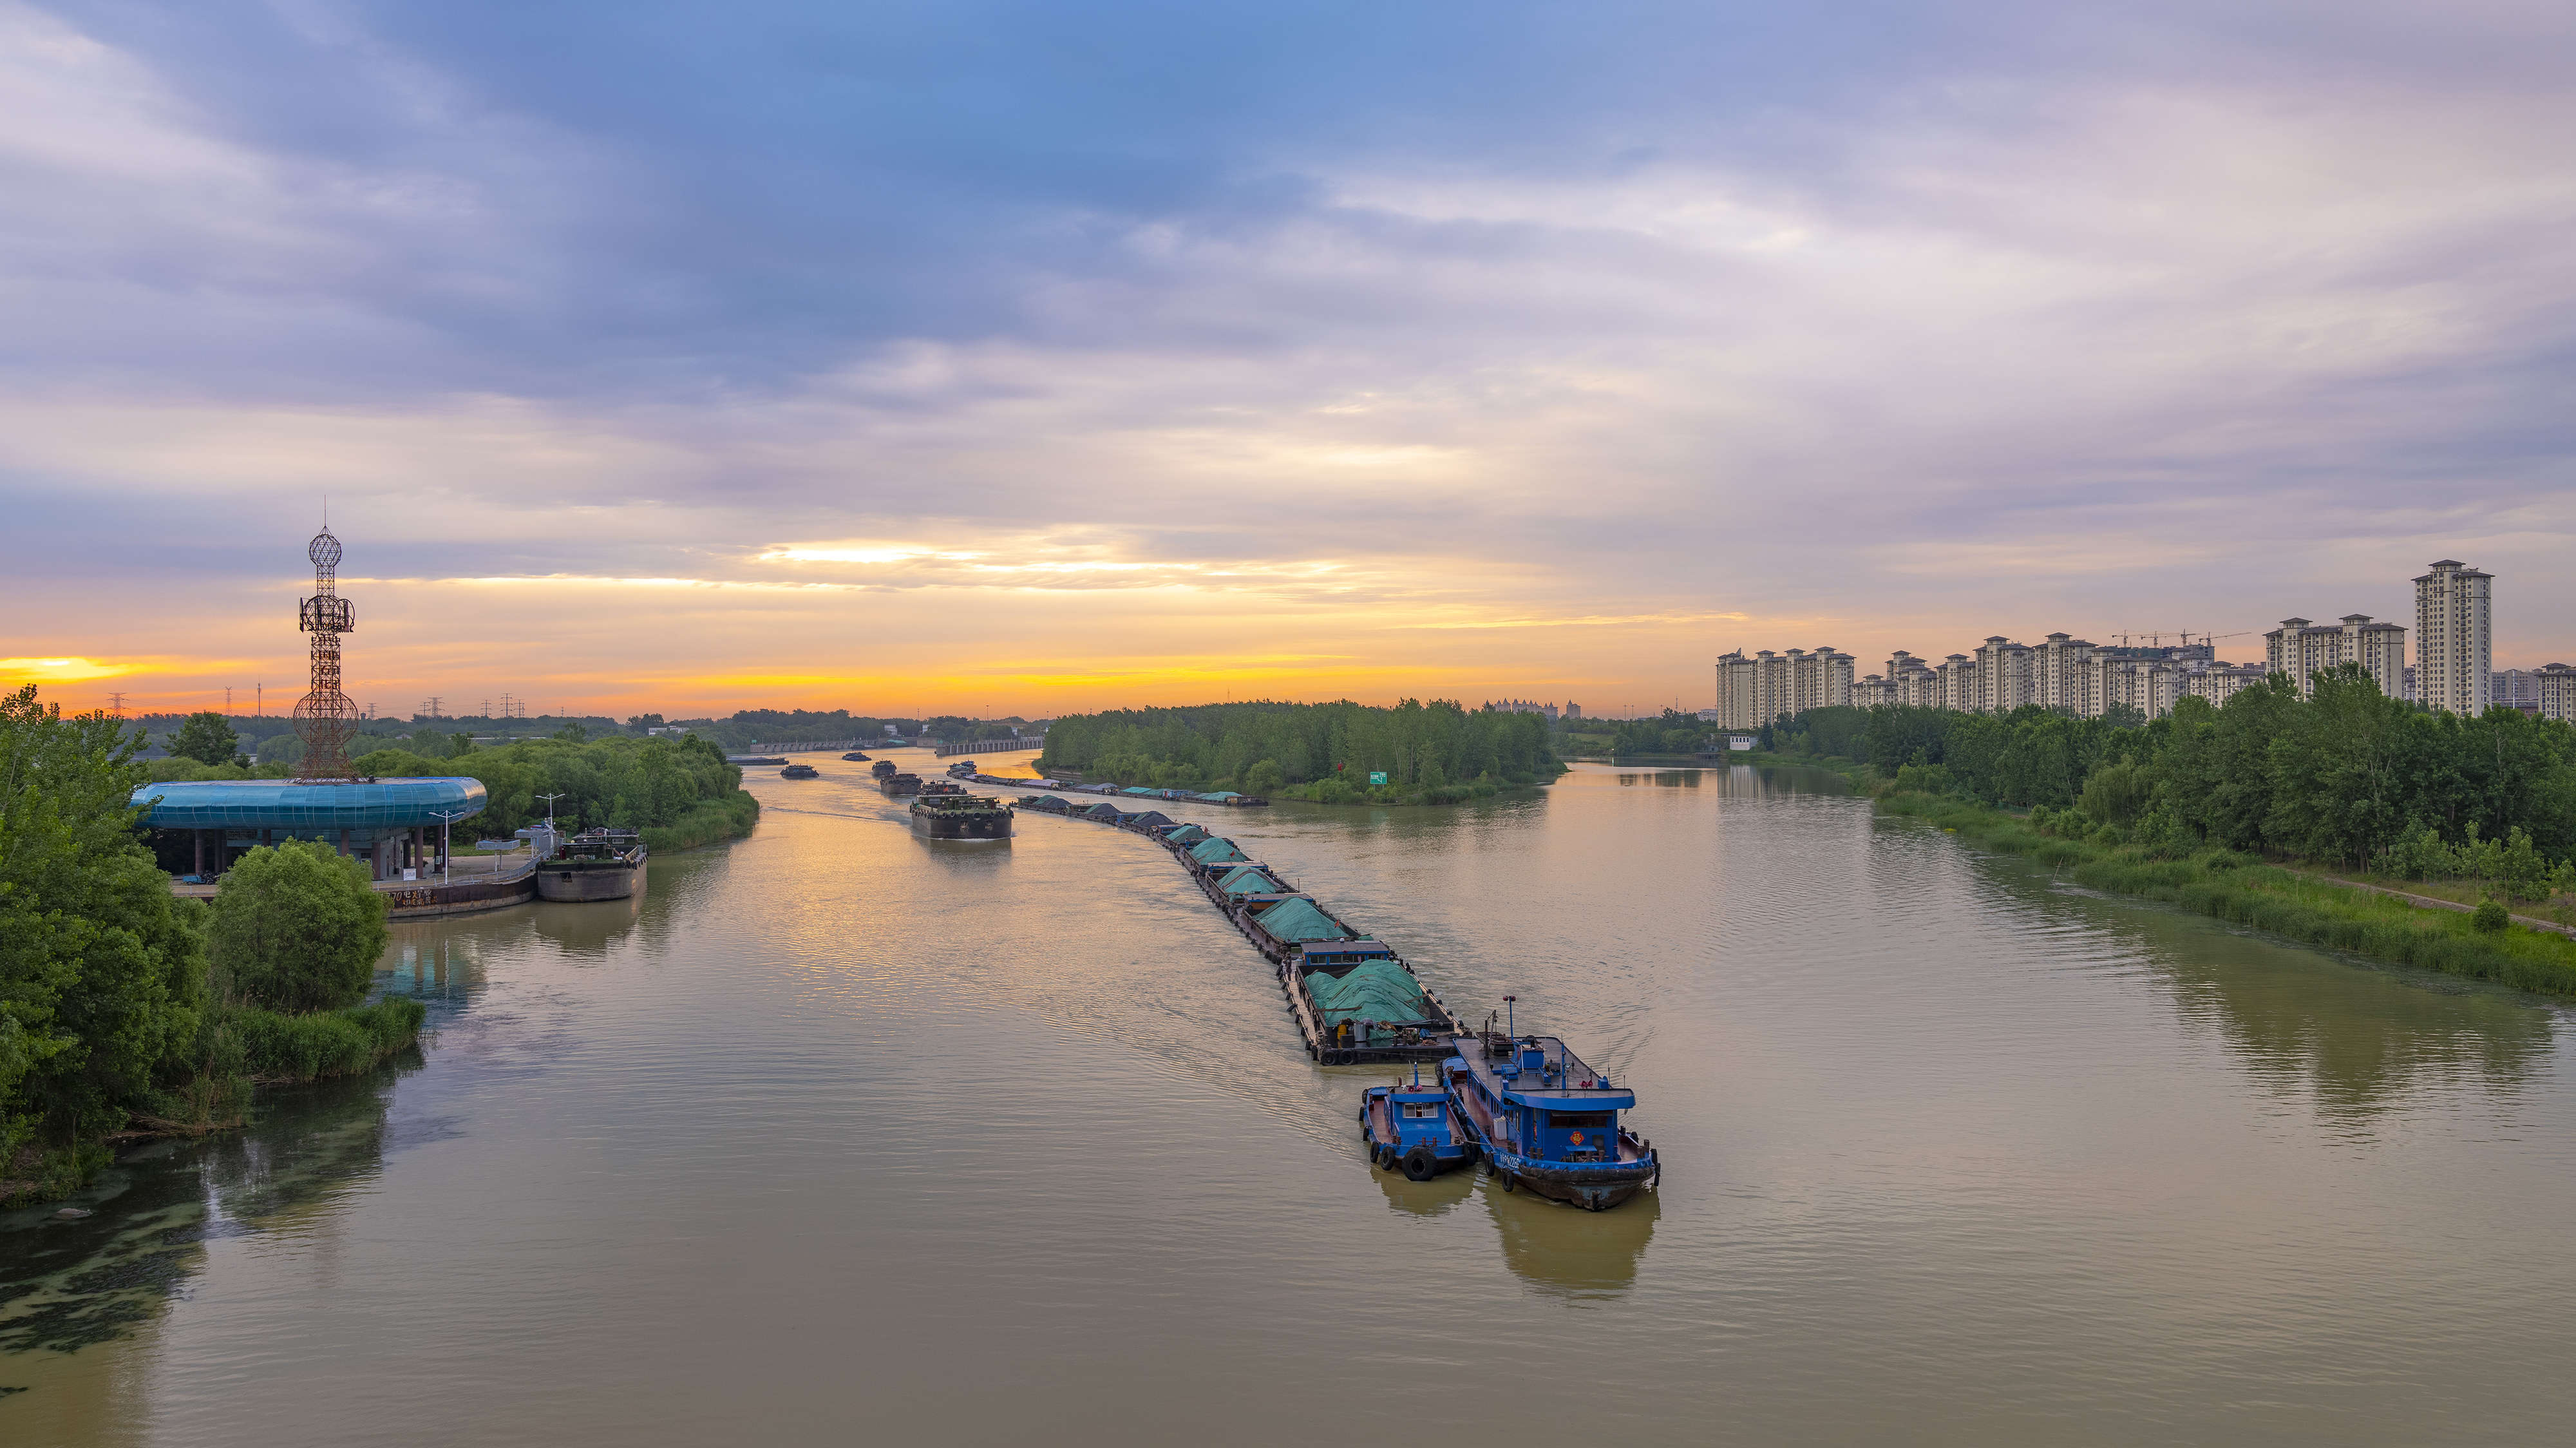 京杭大运河是世界上最长的古代运河